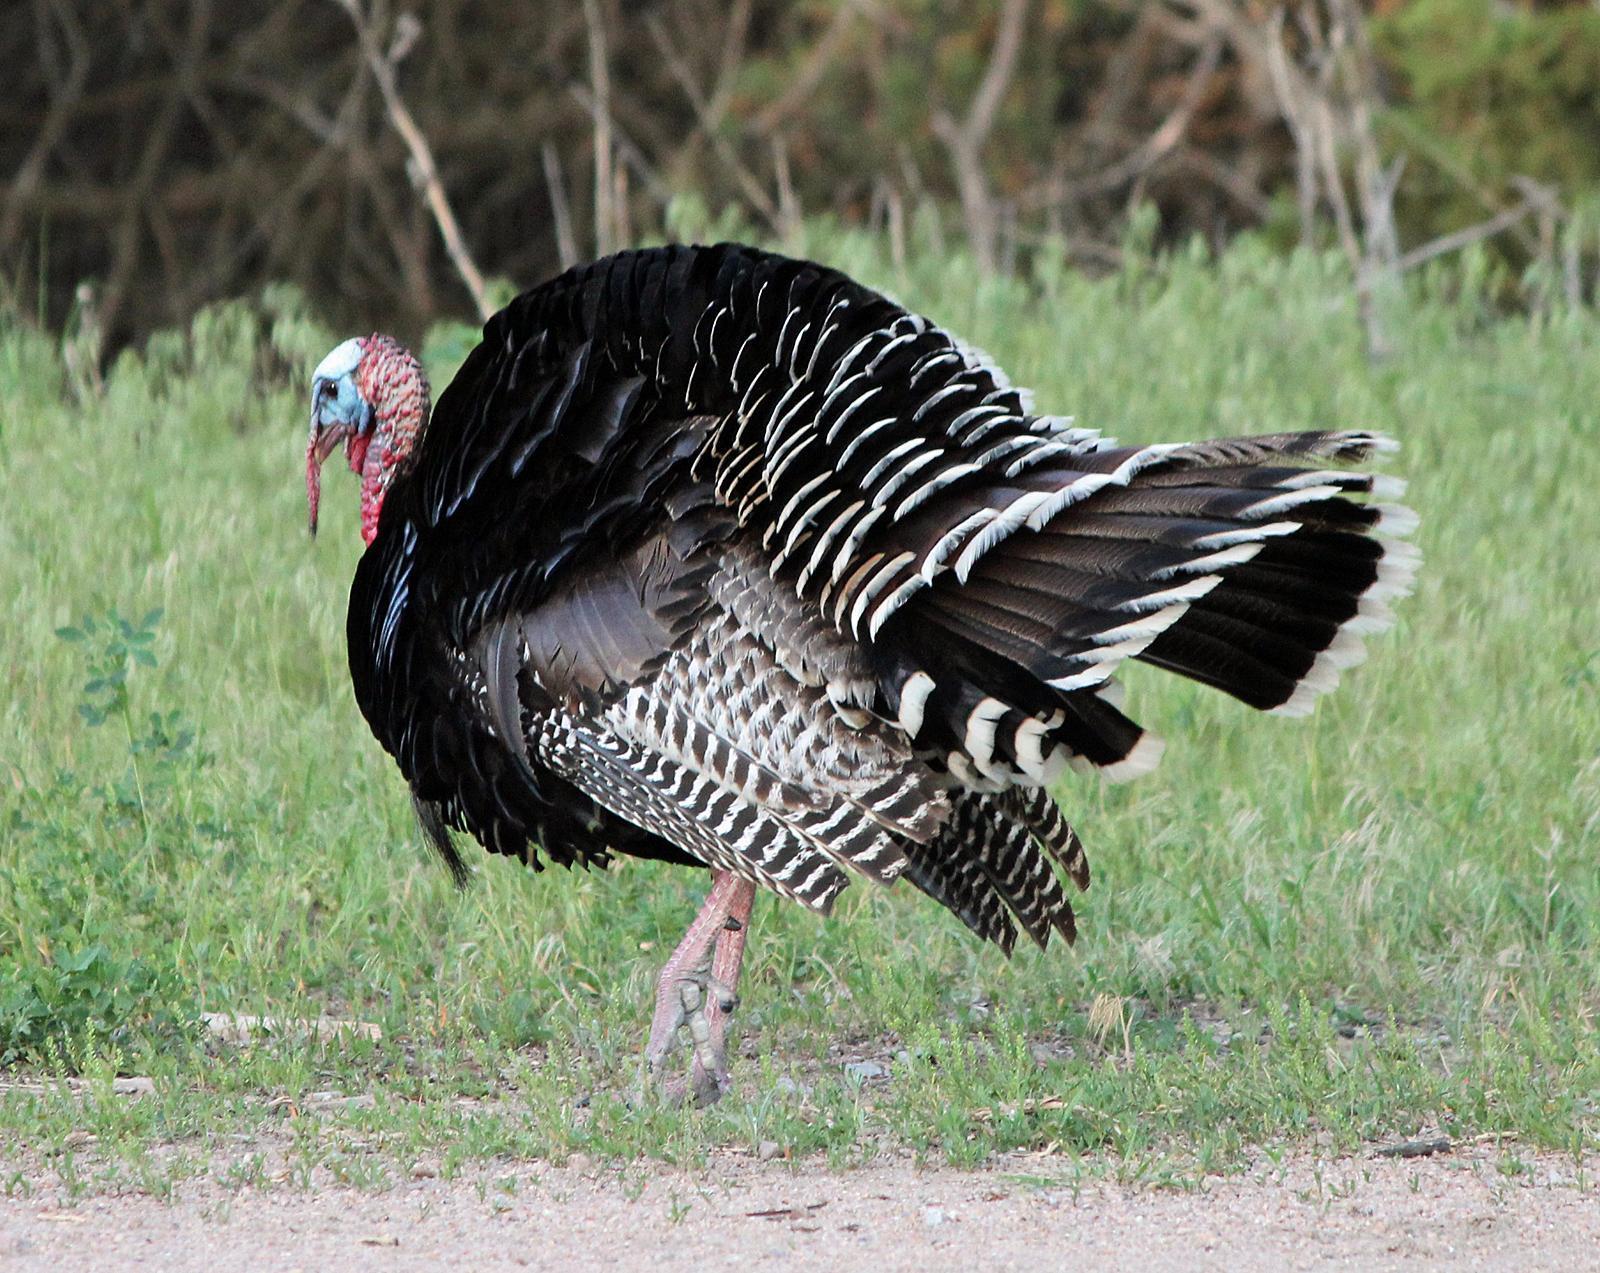 Wild Turkey Photo by Tom Gannon